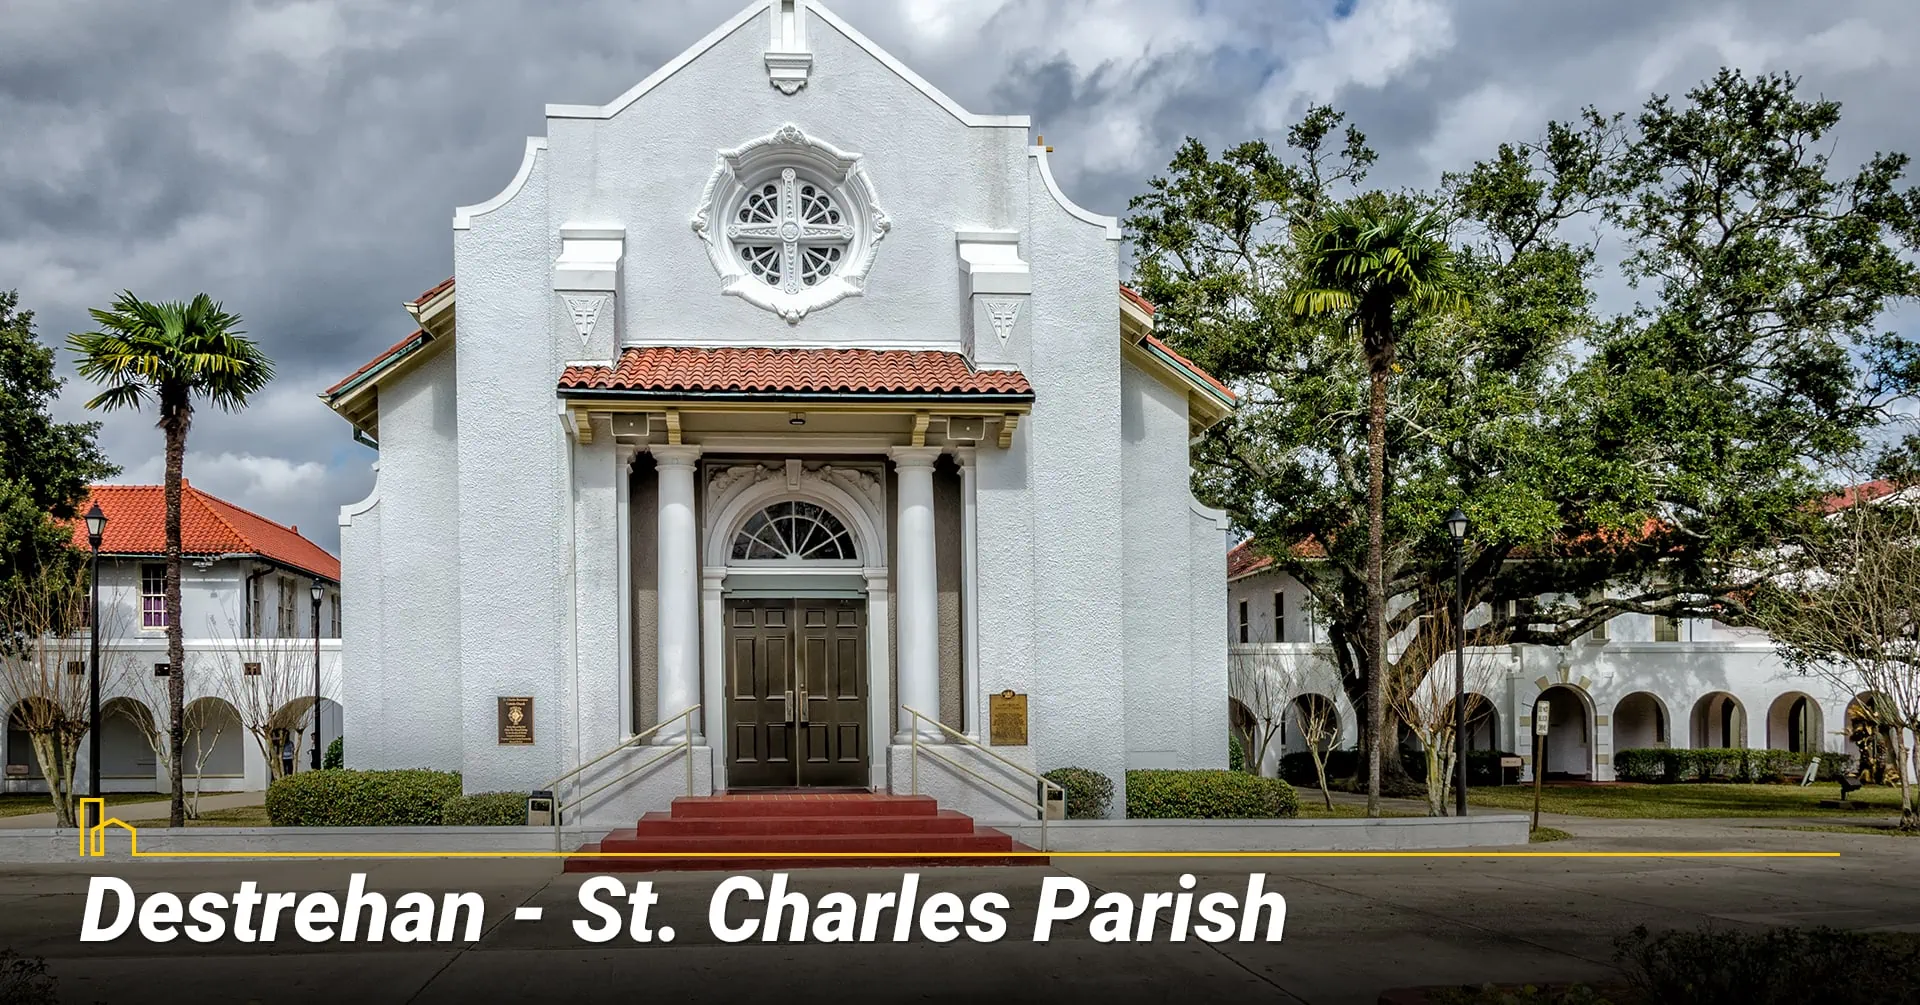 Destrehan - St. Charles Parish